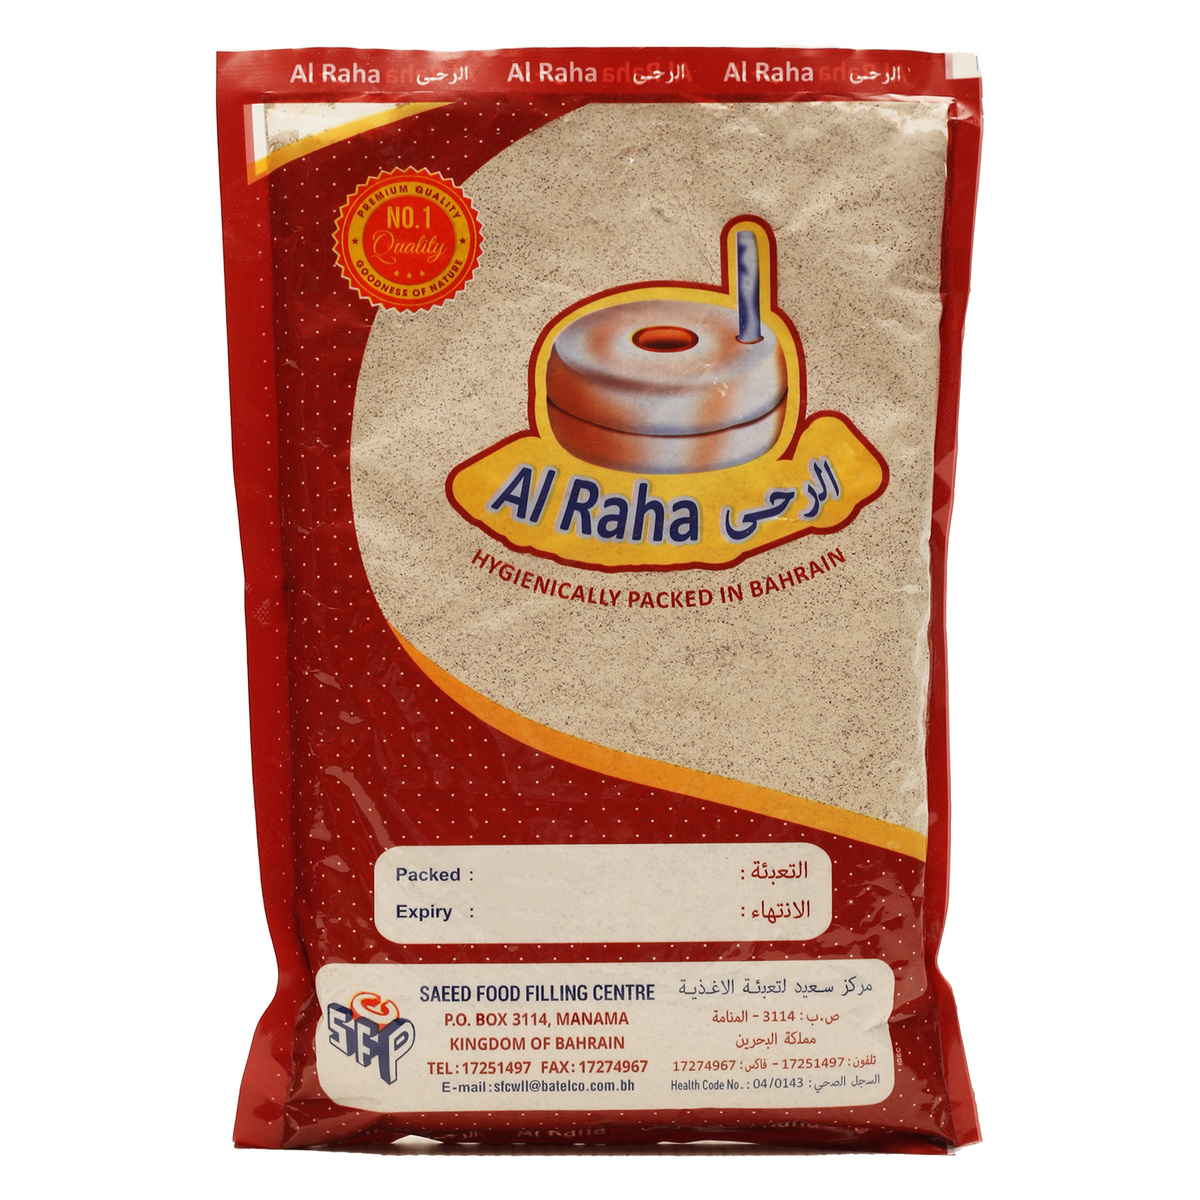 Al Raha Ragi Flour 400g